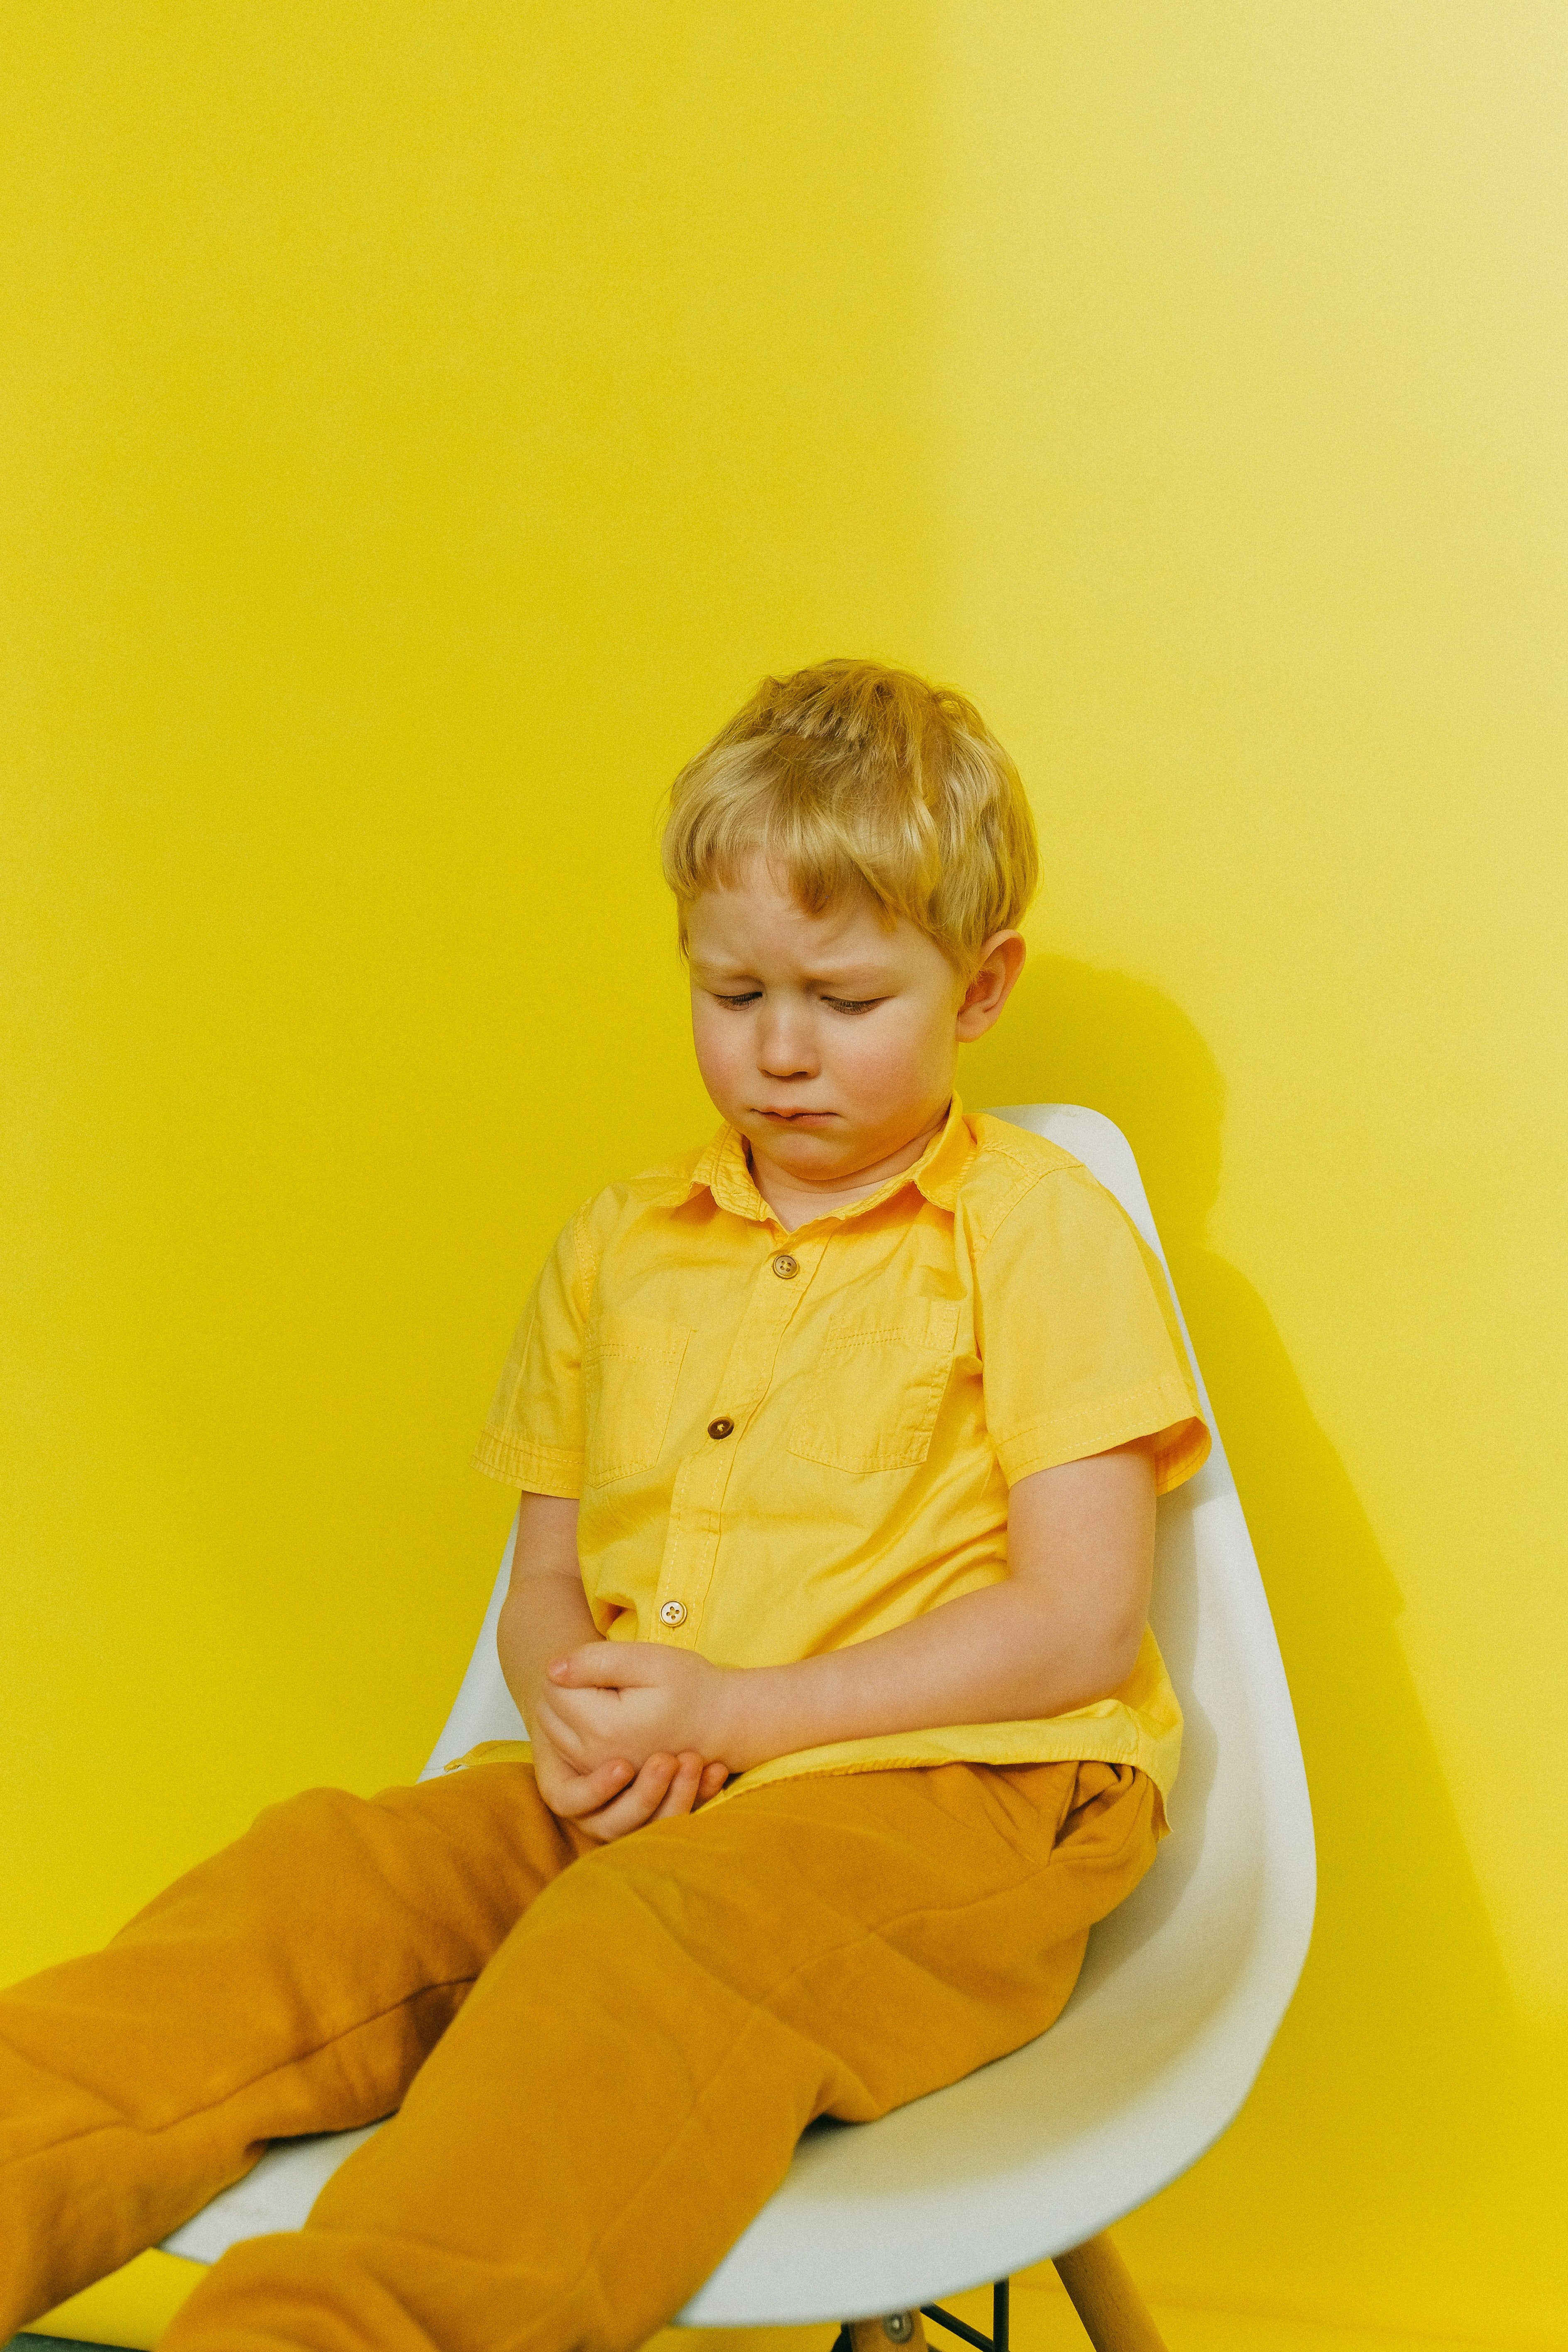 Un enfant triste | Photo : Pexel